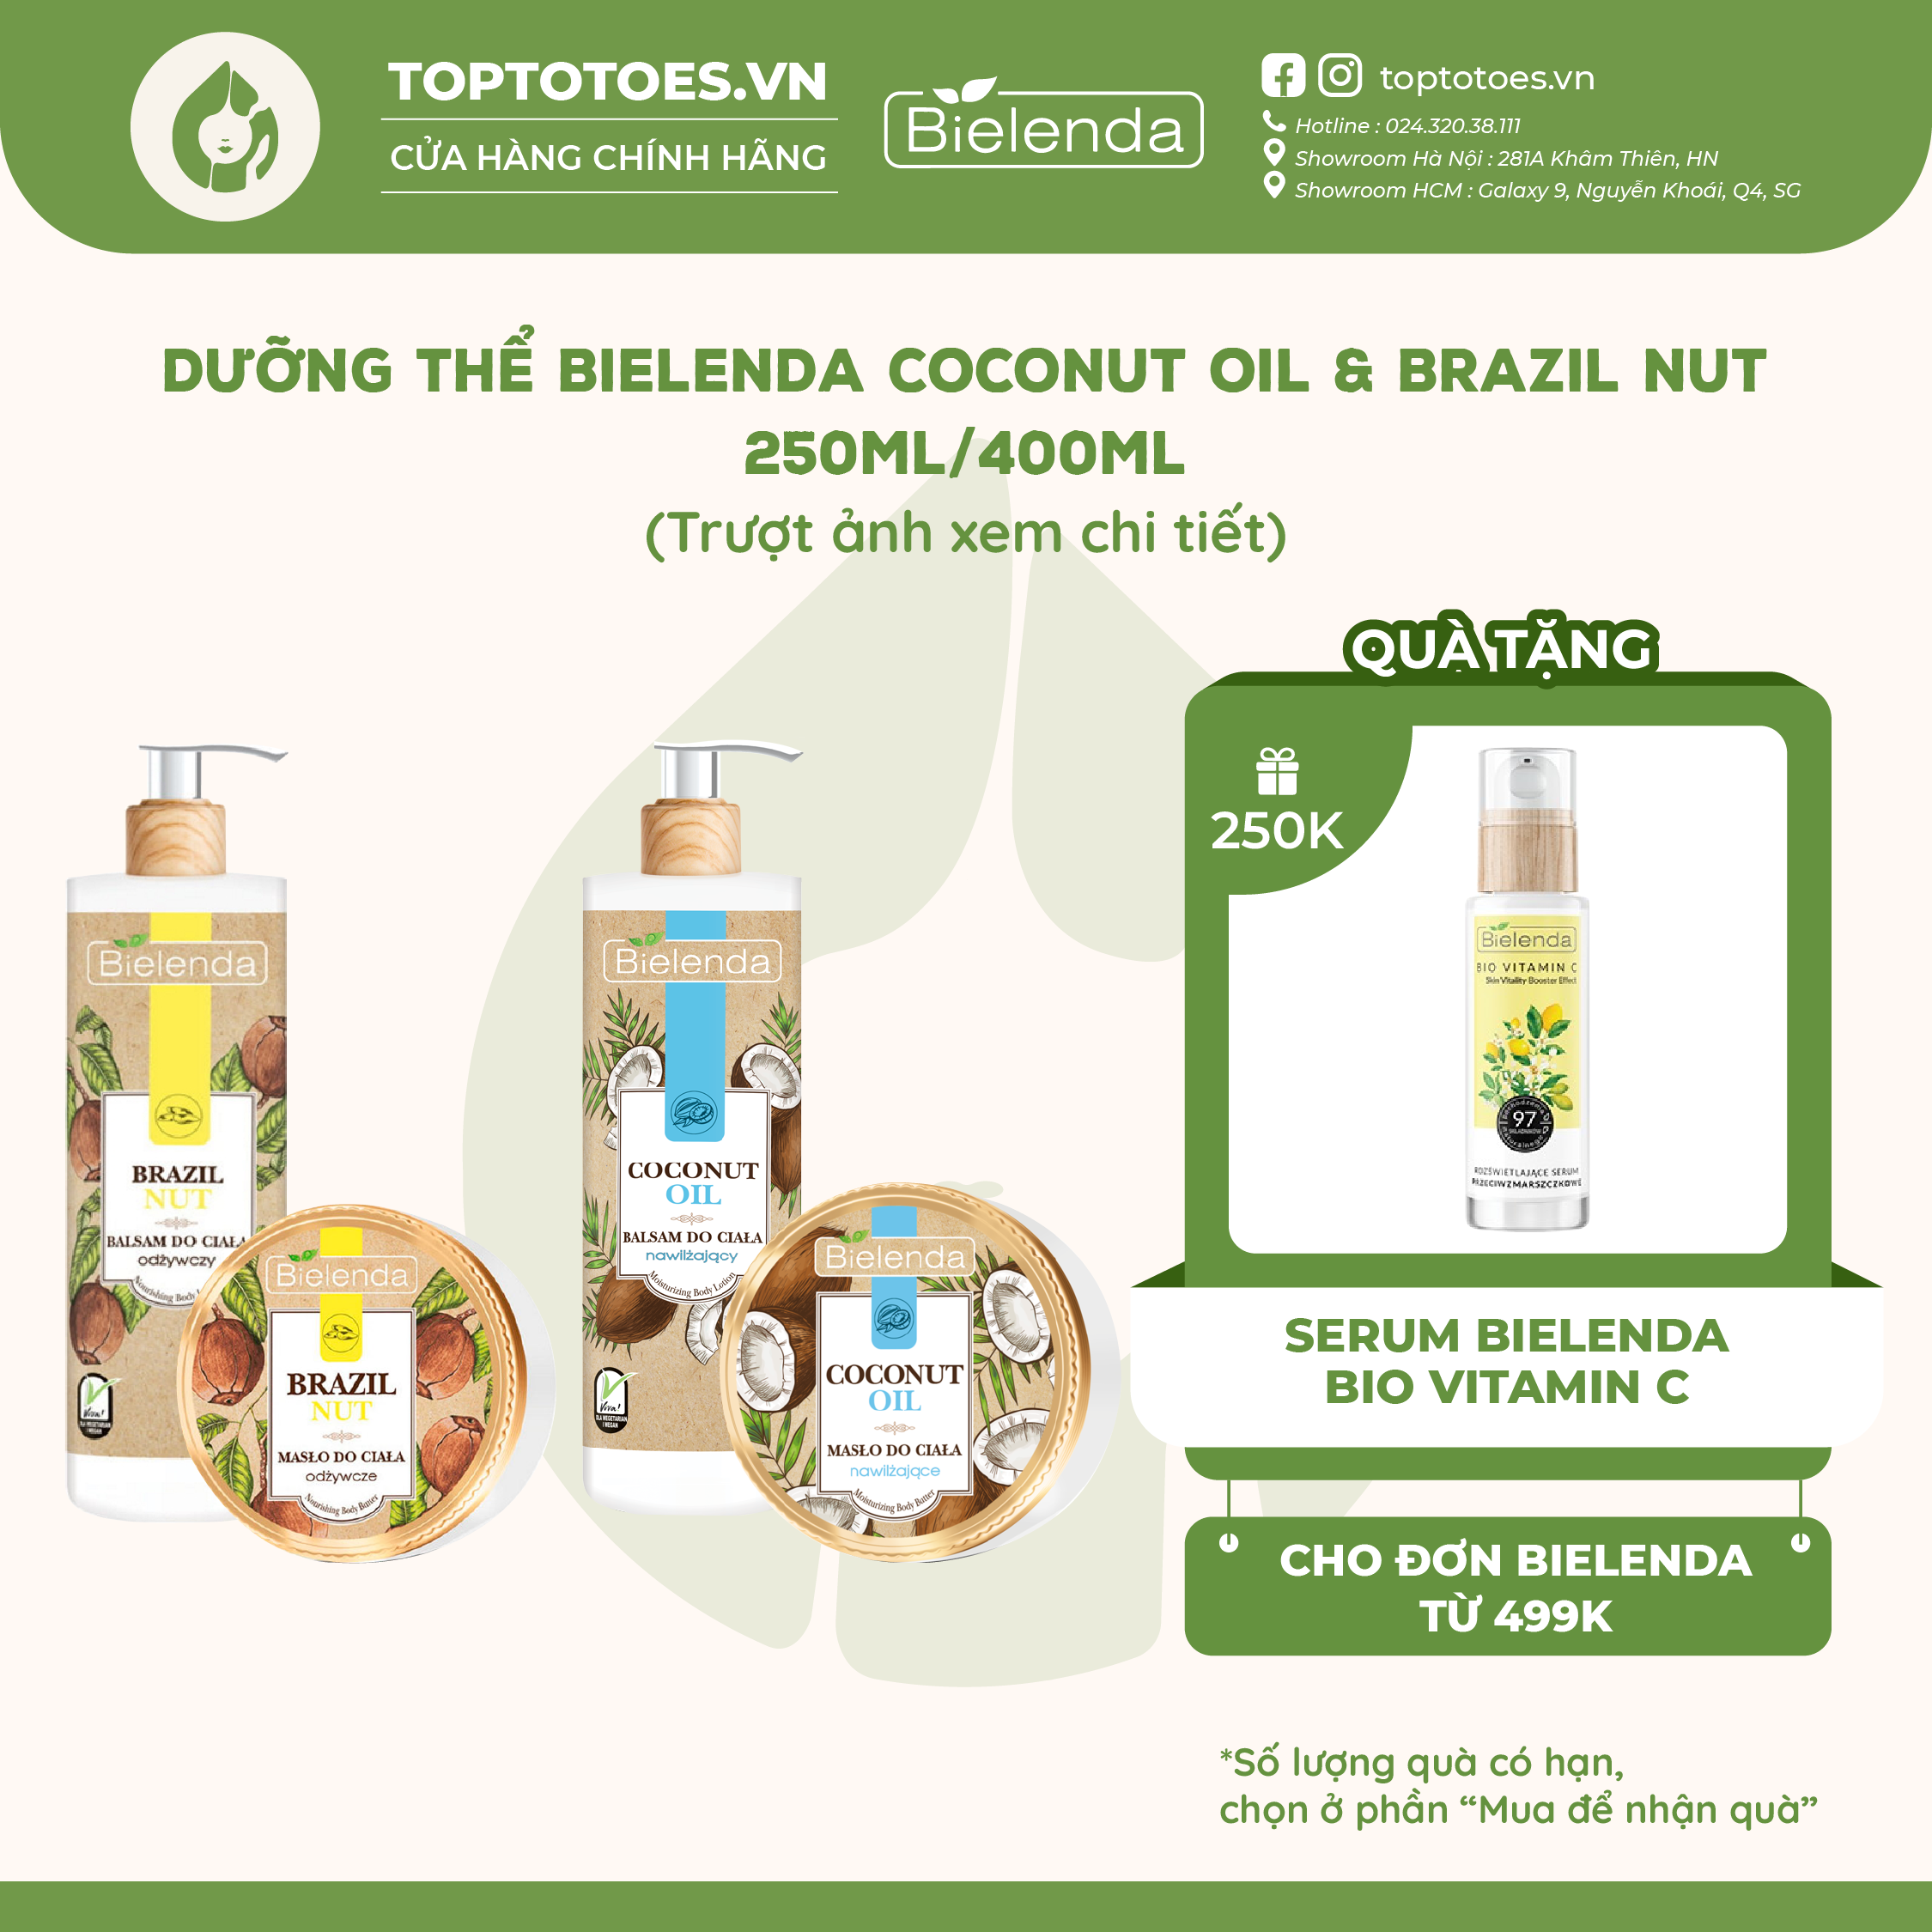 Dưỡng thể Bielenda Coconut Oil & Brazil Nut dưỡng ẩm sâu